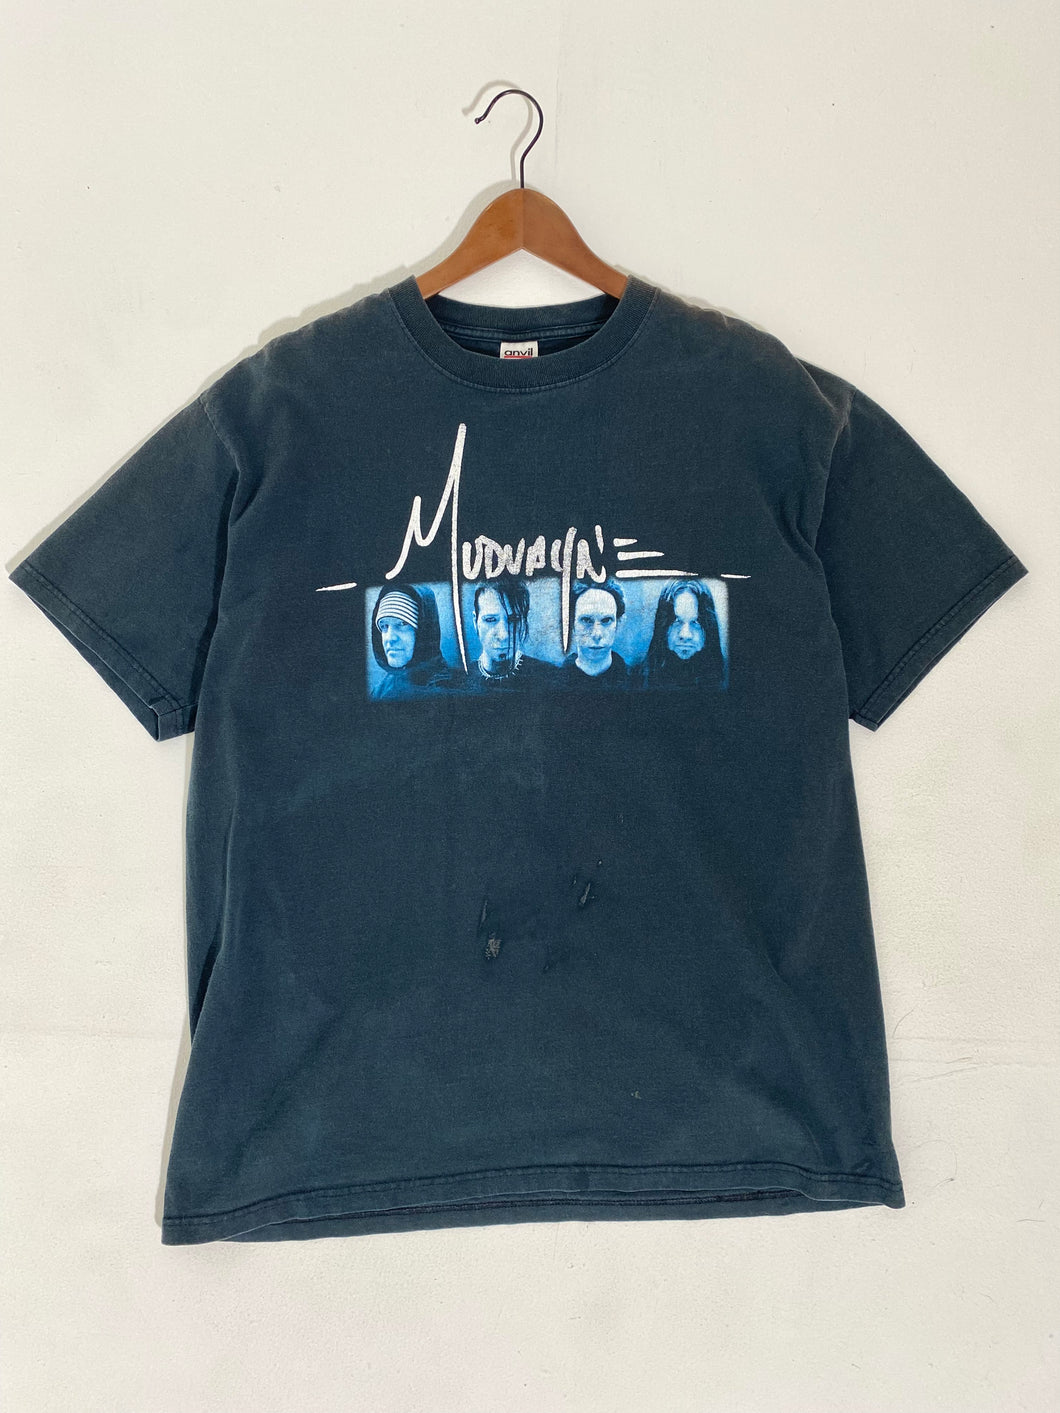 Vintage 1990's Mudvayne Band T-Shirt Sz. XL